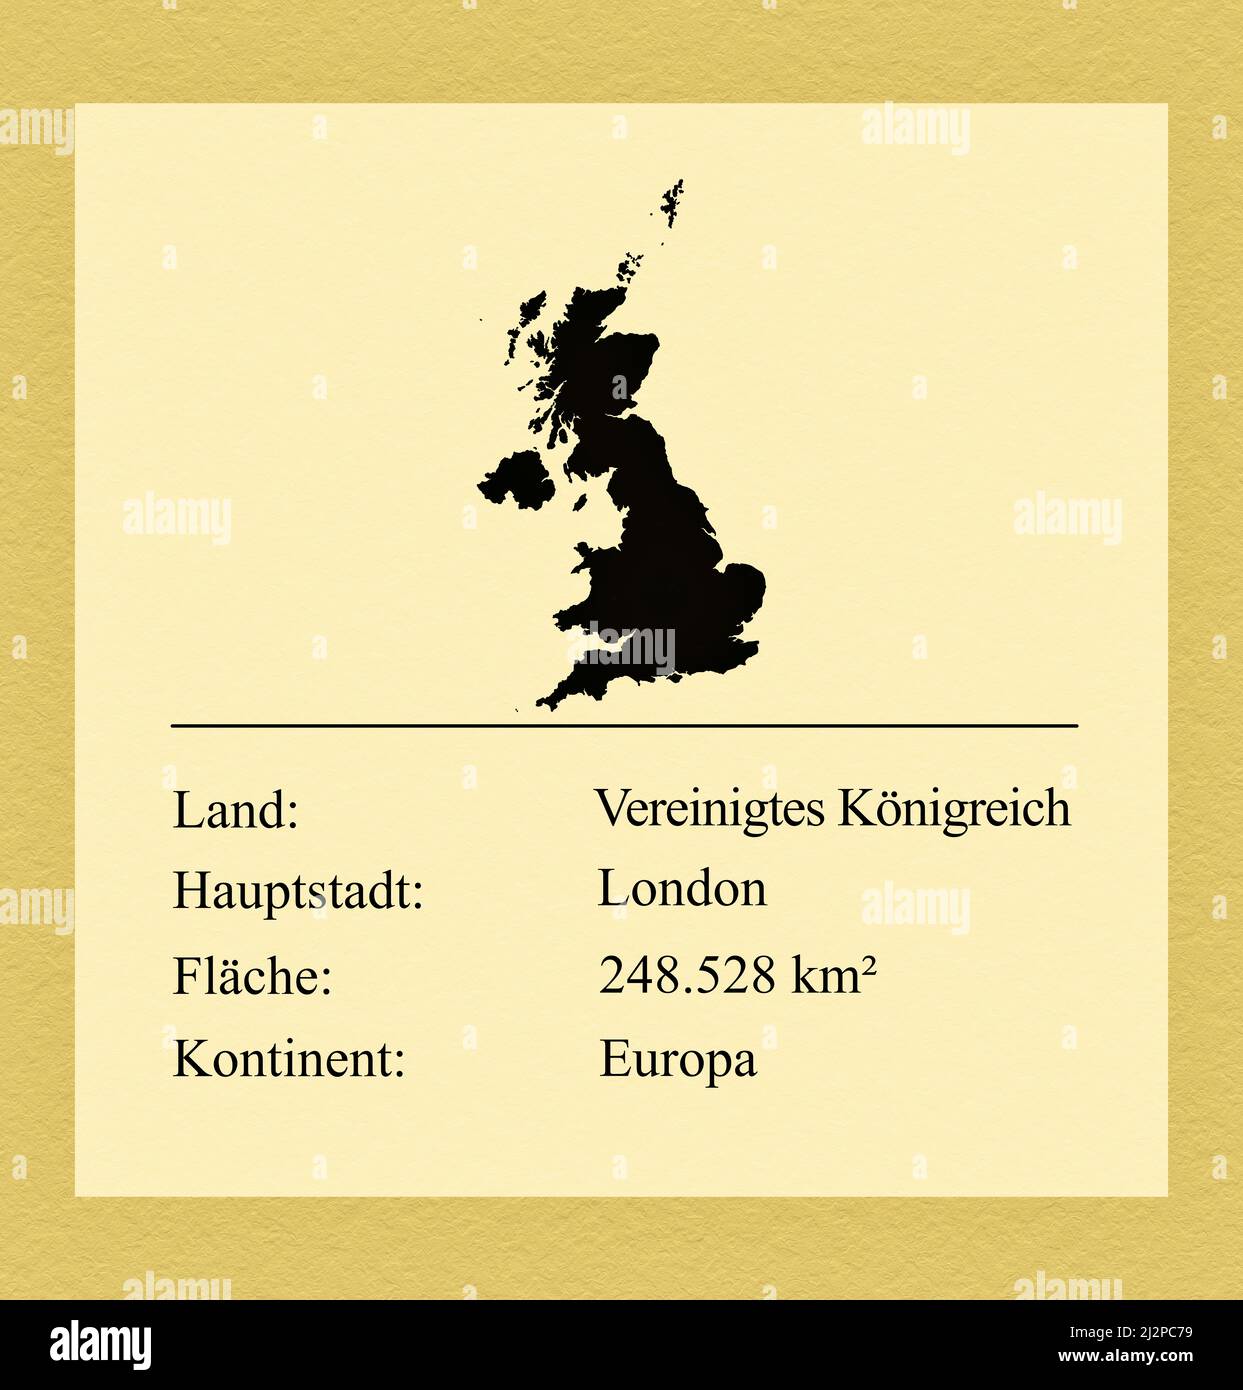 Umrisse des Vereinigten Königreiches, darunter ein kleiner Steckbrief mit Ländernamen, Hauptstadt, Fläche und Kontinent Foto Stock